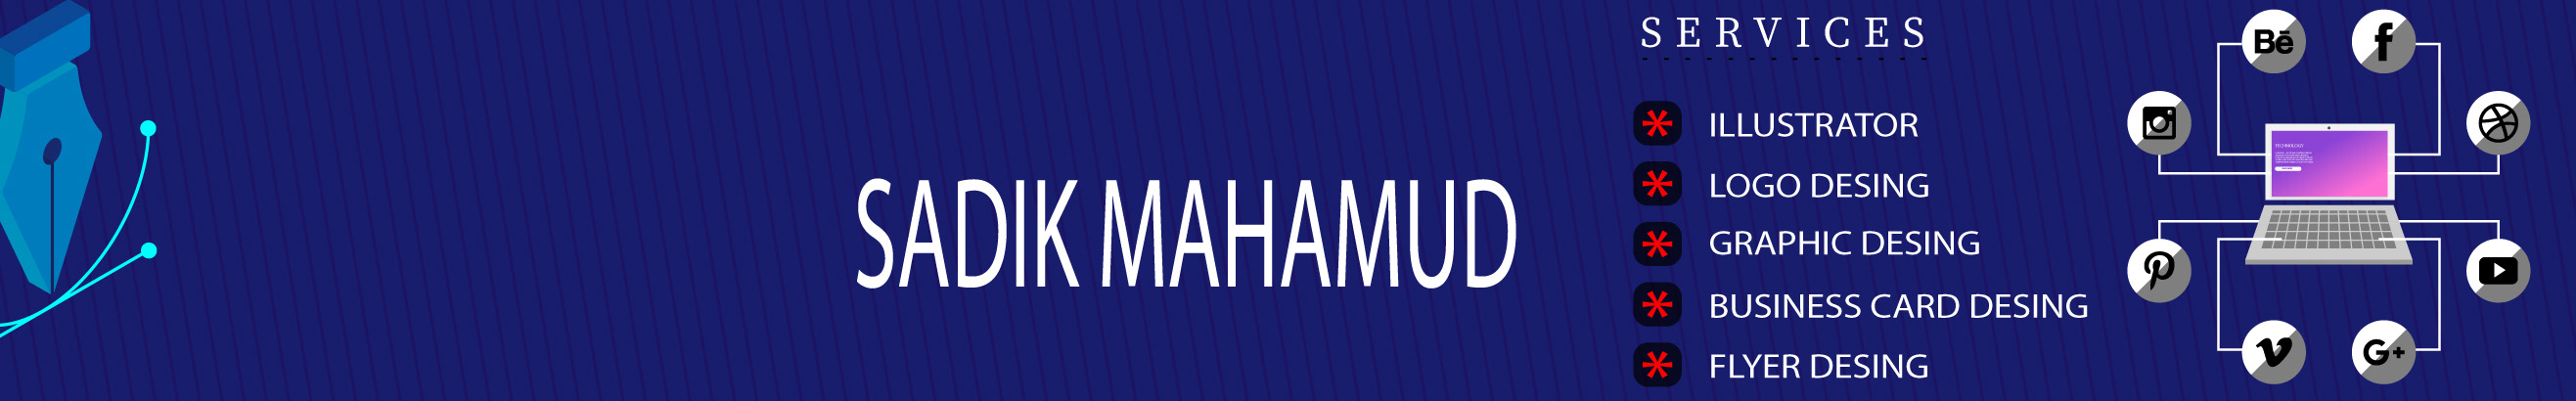 Sadik Mahamud のプロファイルバナー